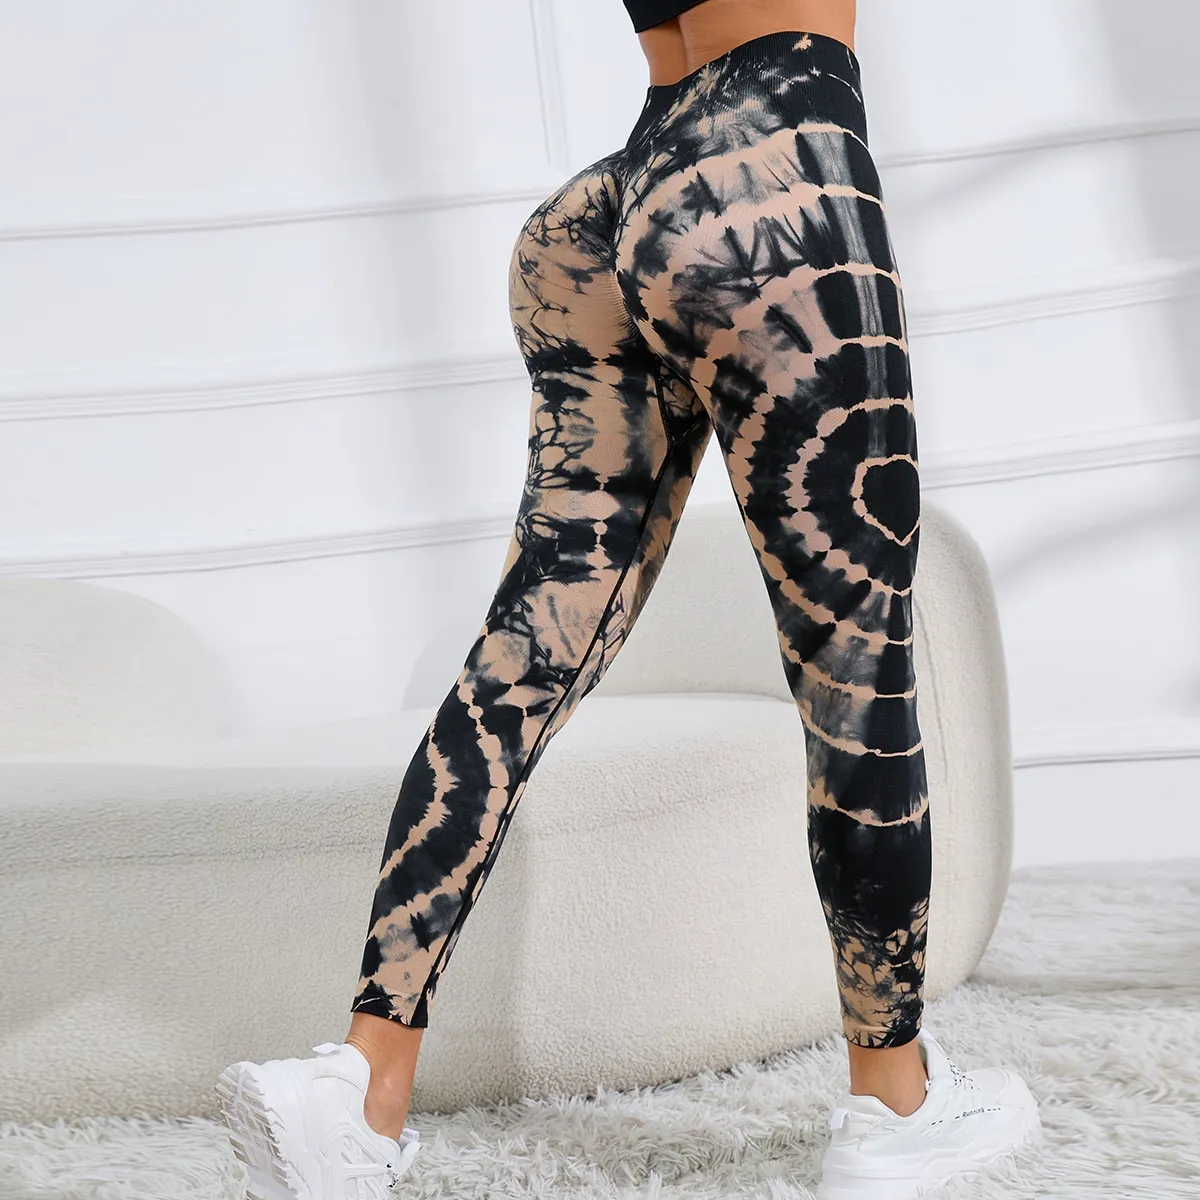 Yoga byxor binder färgämne med hög midja sömlösa leggings midja scrunch rumpa lyft elastiskt tätt träning för kvinnor